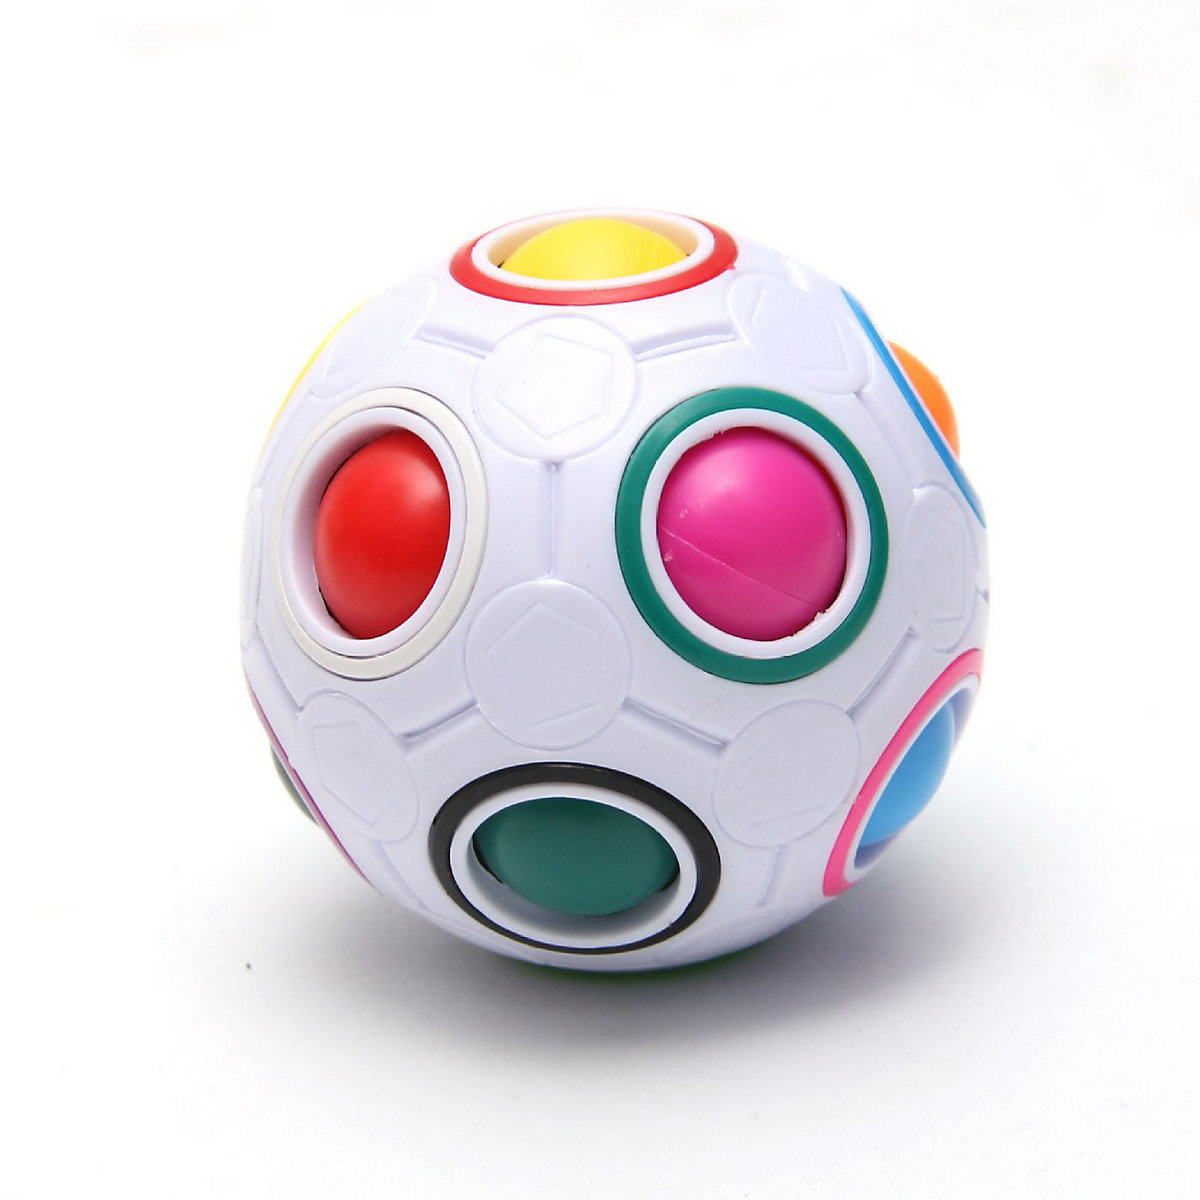 enbaoxin 12 Loch Regenbogenball Geschicklichkeitsspiel für Kinder und Erwachsene Spannendes Knobelspiel